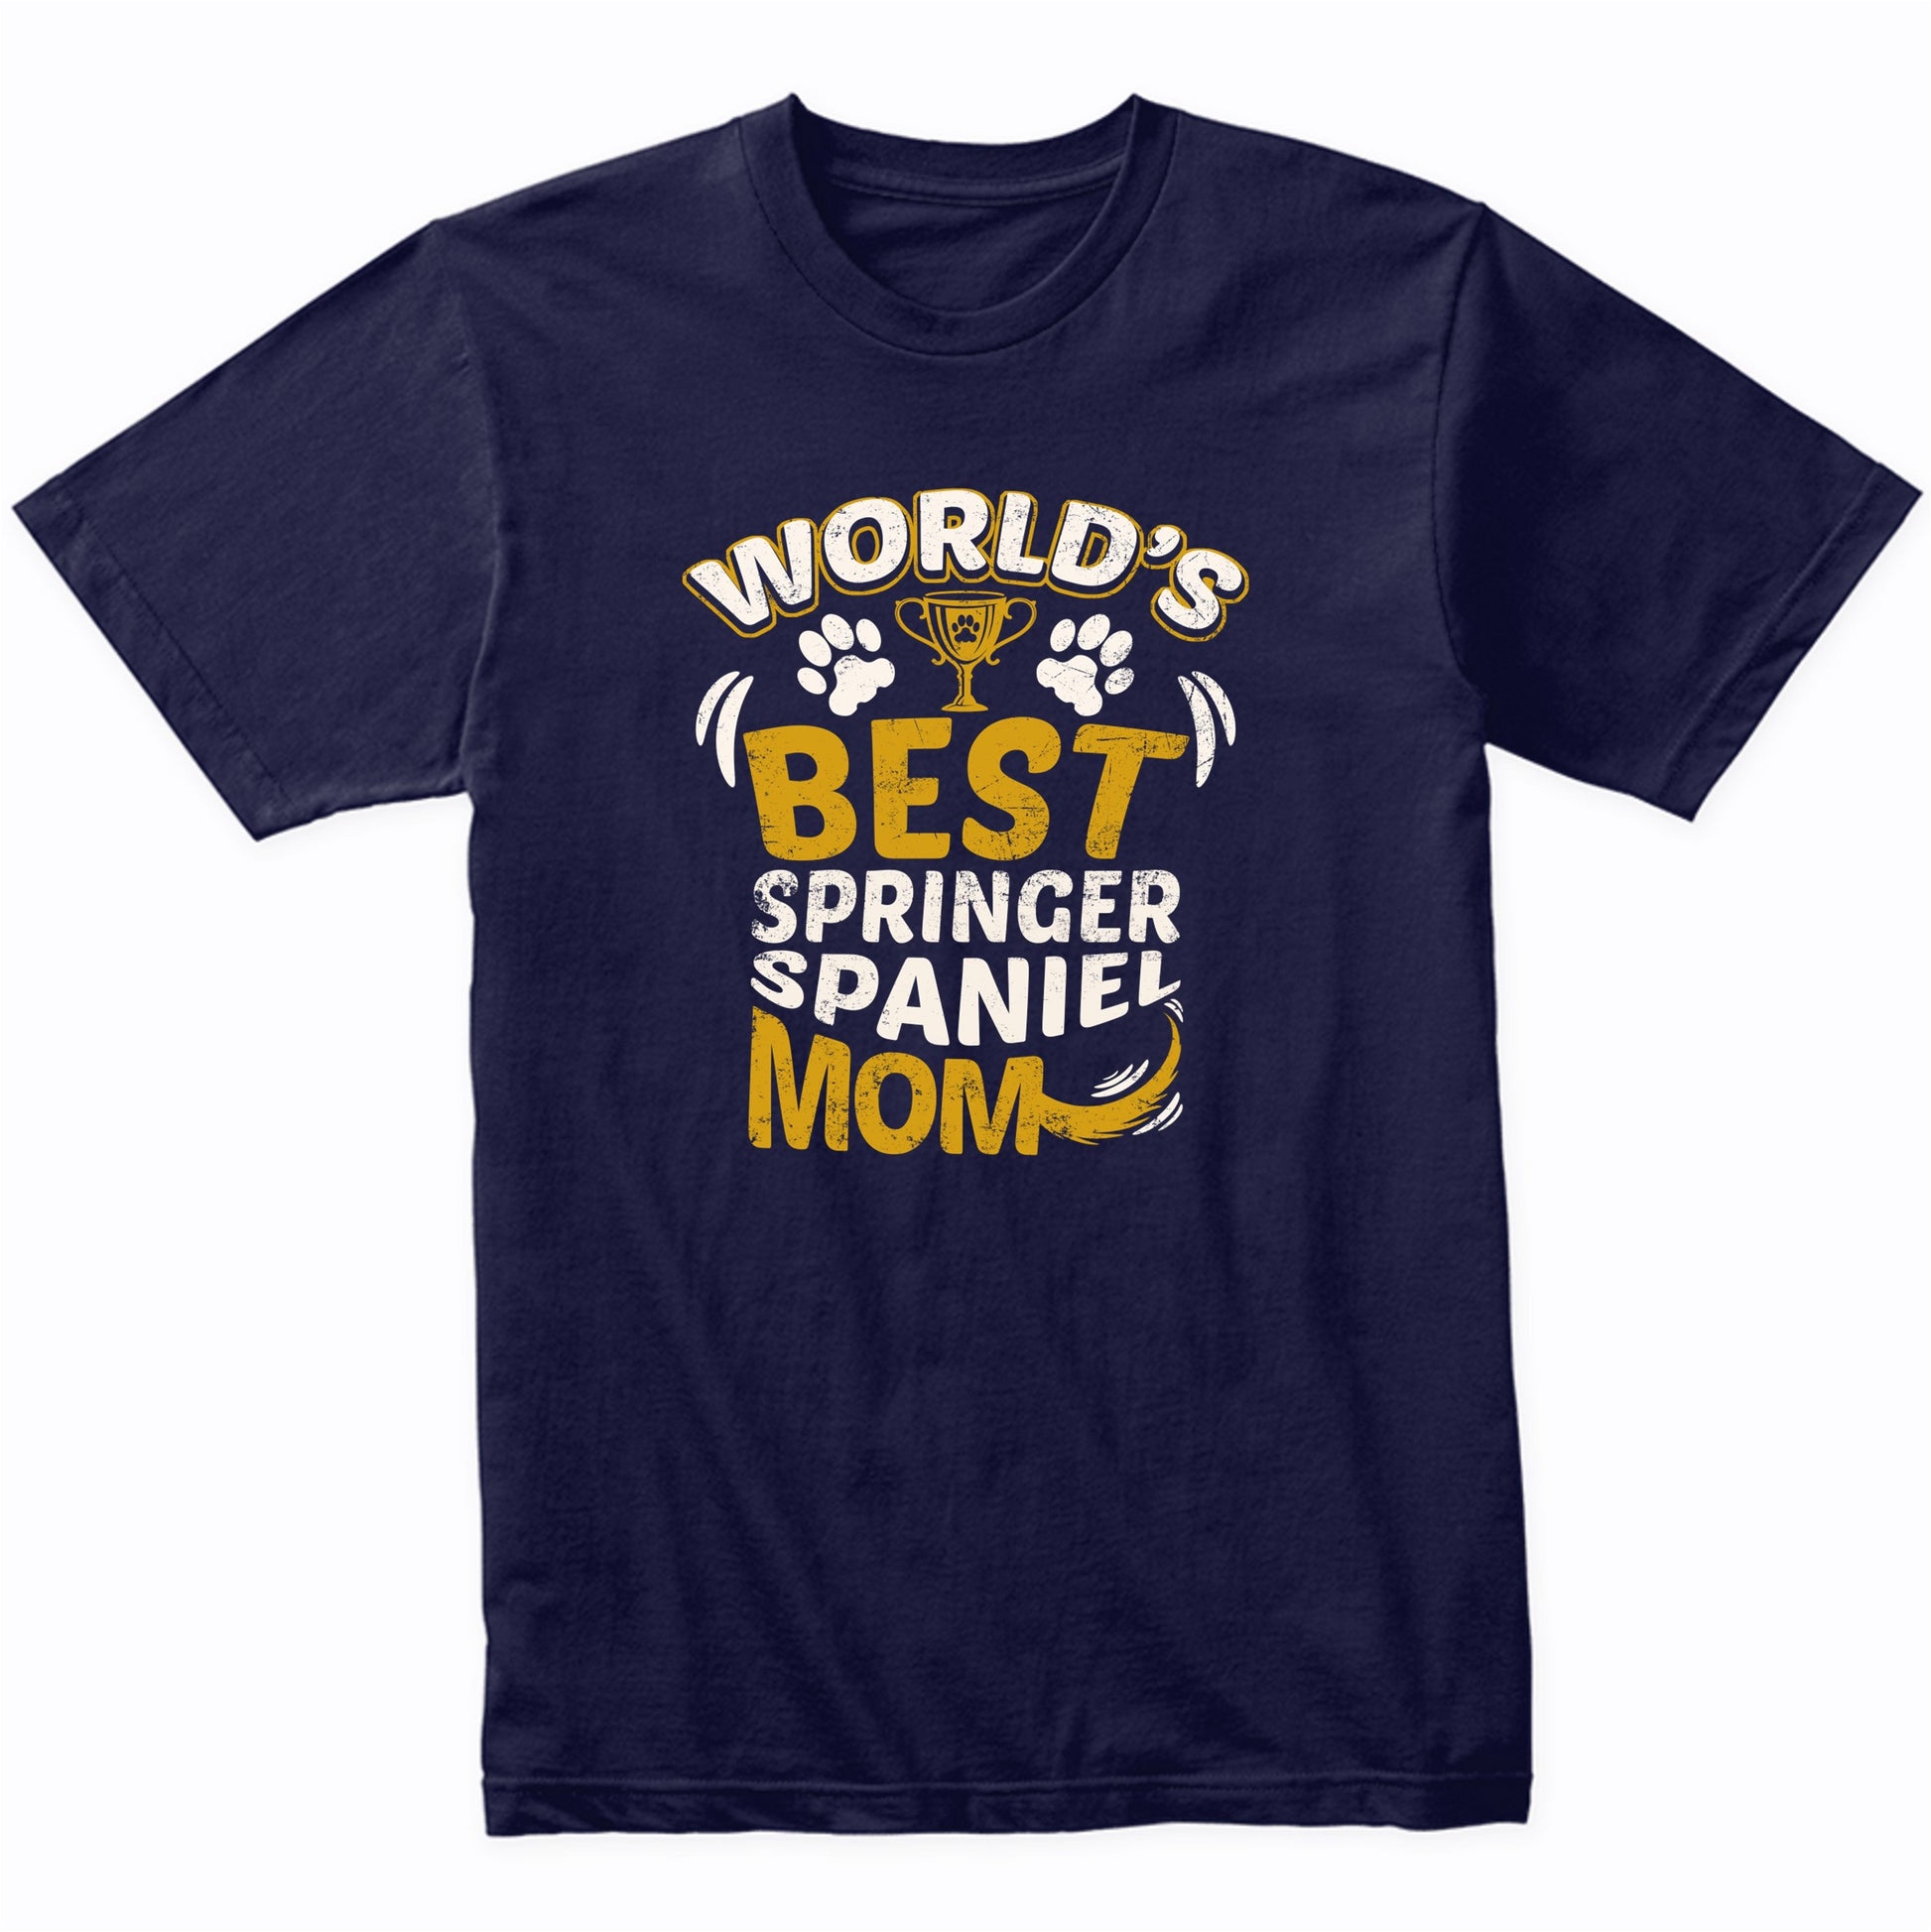 World's Best Springer Spaniel Mom Graphic T-Shirt